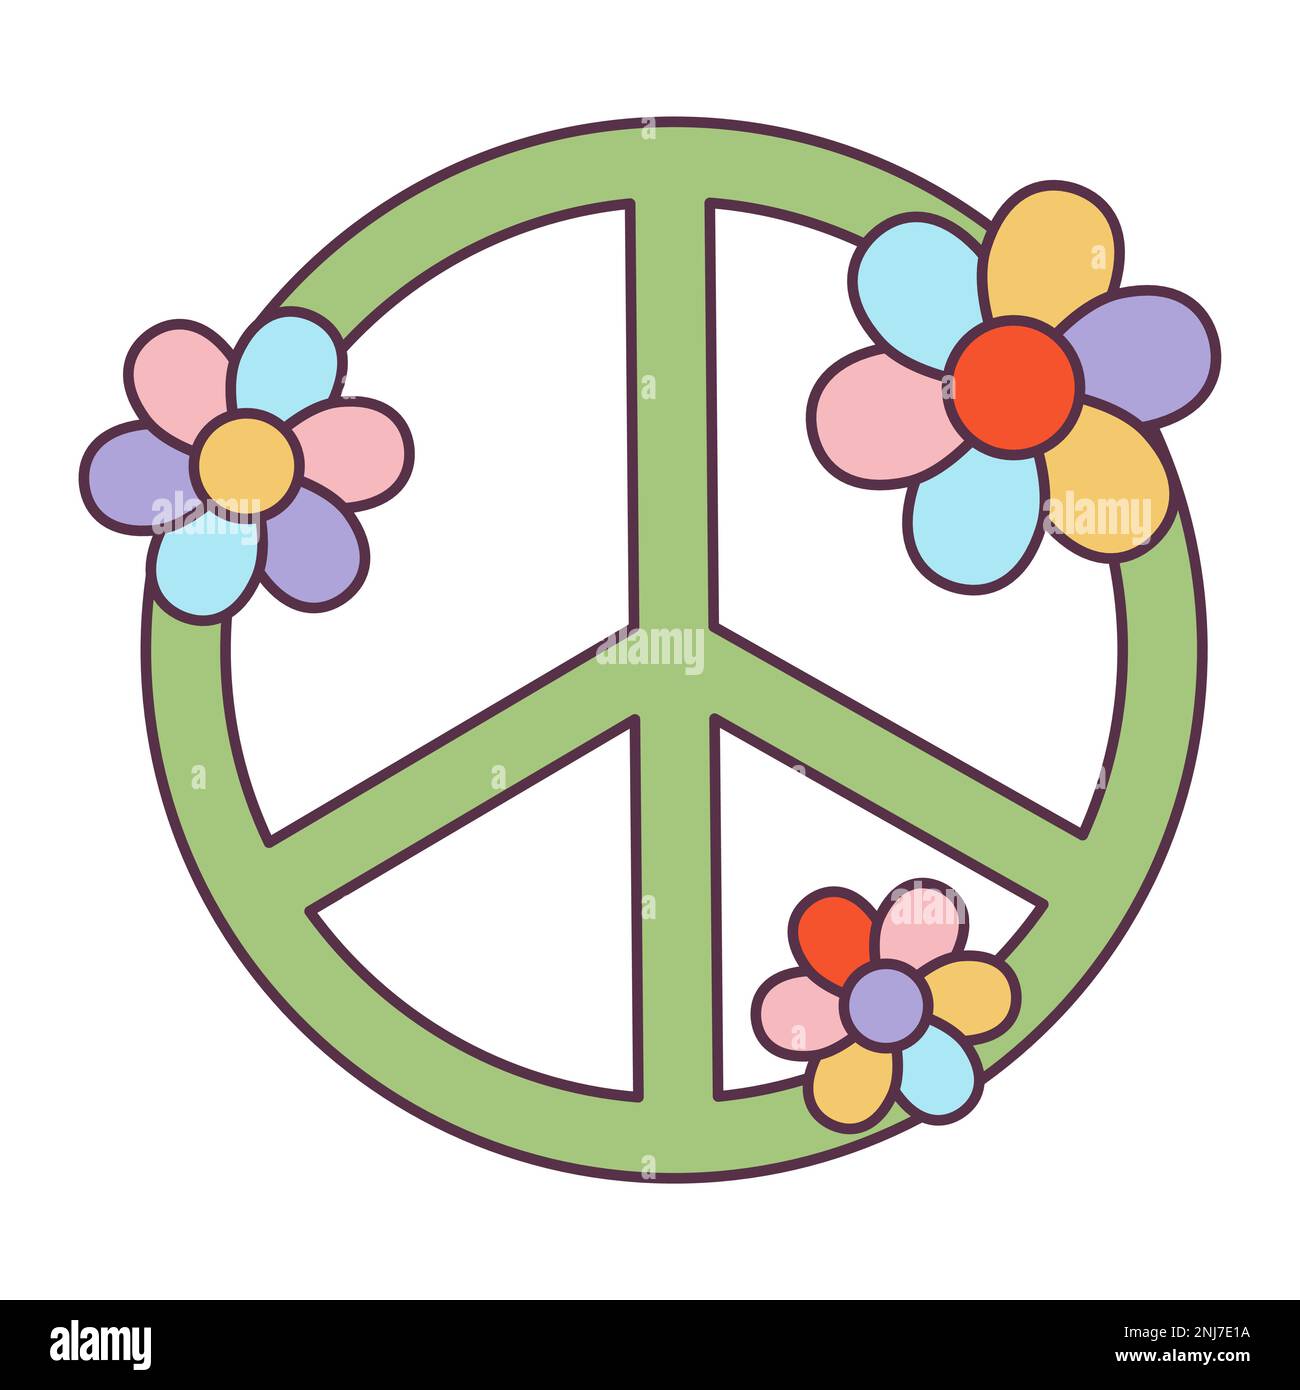 Retro 70s Groovy Hippie adesivo pace simbolo con fiori. Elemento cartoon psichedelico - illustrazione funky in stile hippy vintage. Piatto vettoriale Illustrazione Vettoriale